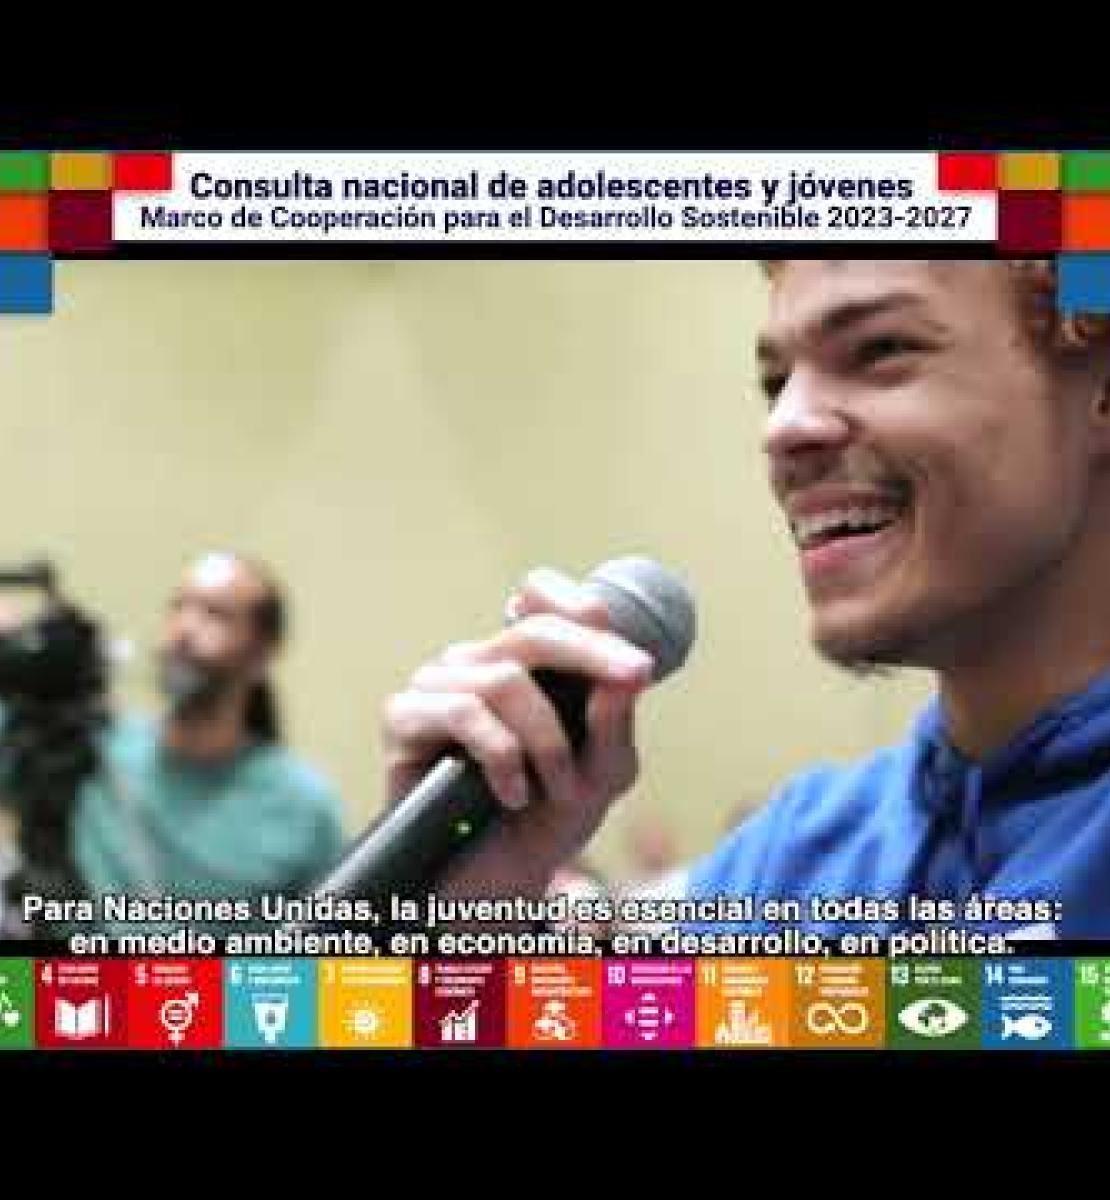 Jóvenes en República Dominicana hacen aportes vitales al Marco de Cooperación 2023-2027